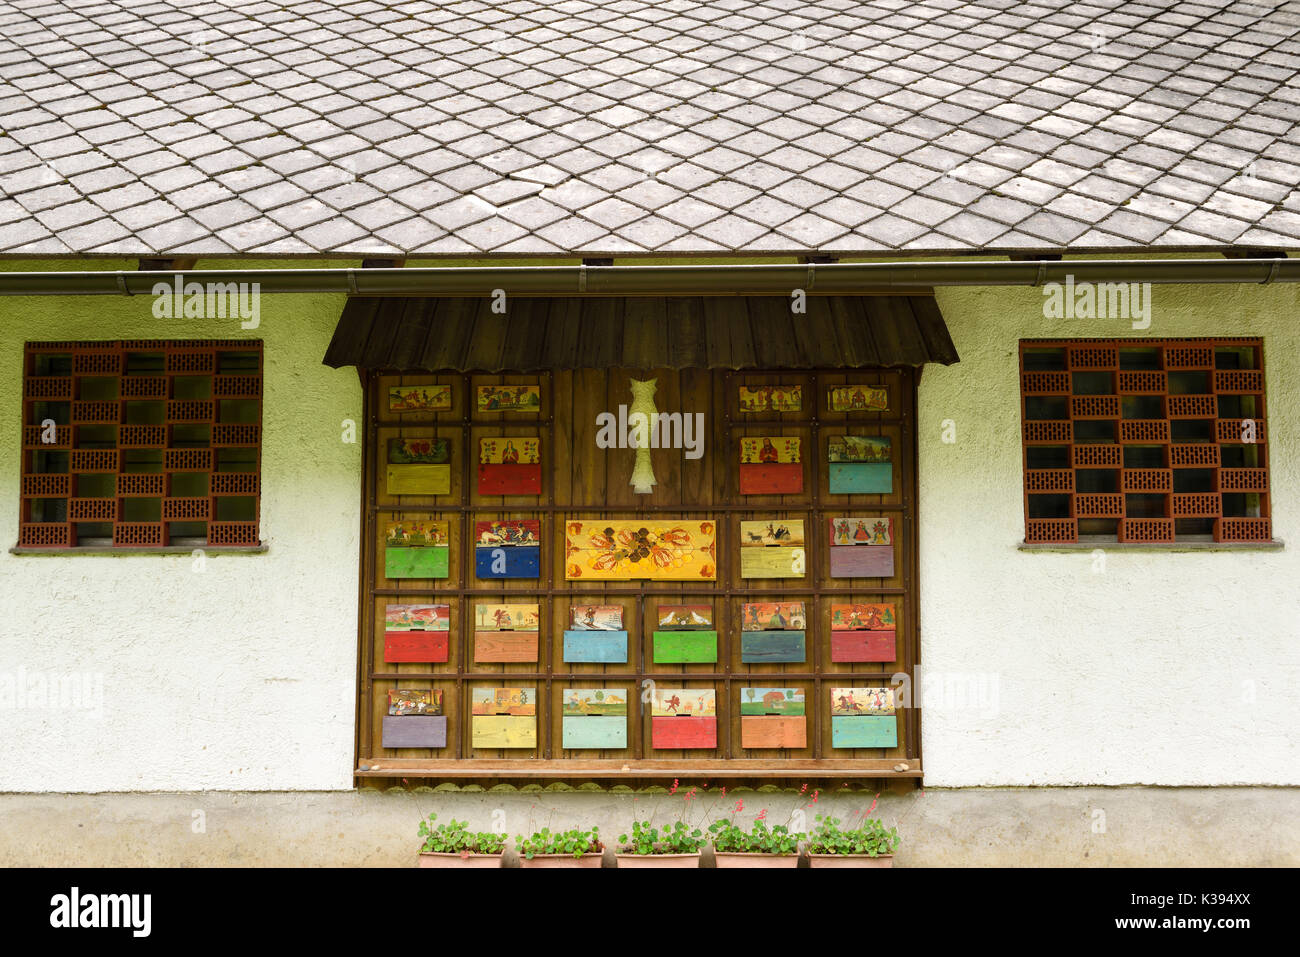 Peint à la main couleurs ruche rucher couvre la décoration du côté d'un bâtiment avec toit en pierre à Dornk Mlino Bled Slovénie ferme village Banque D'Images